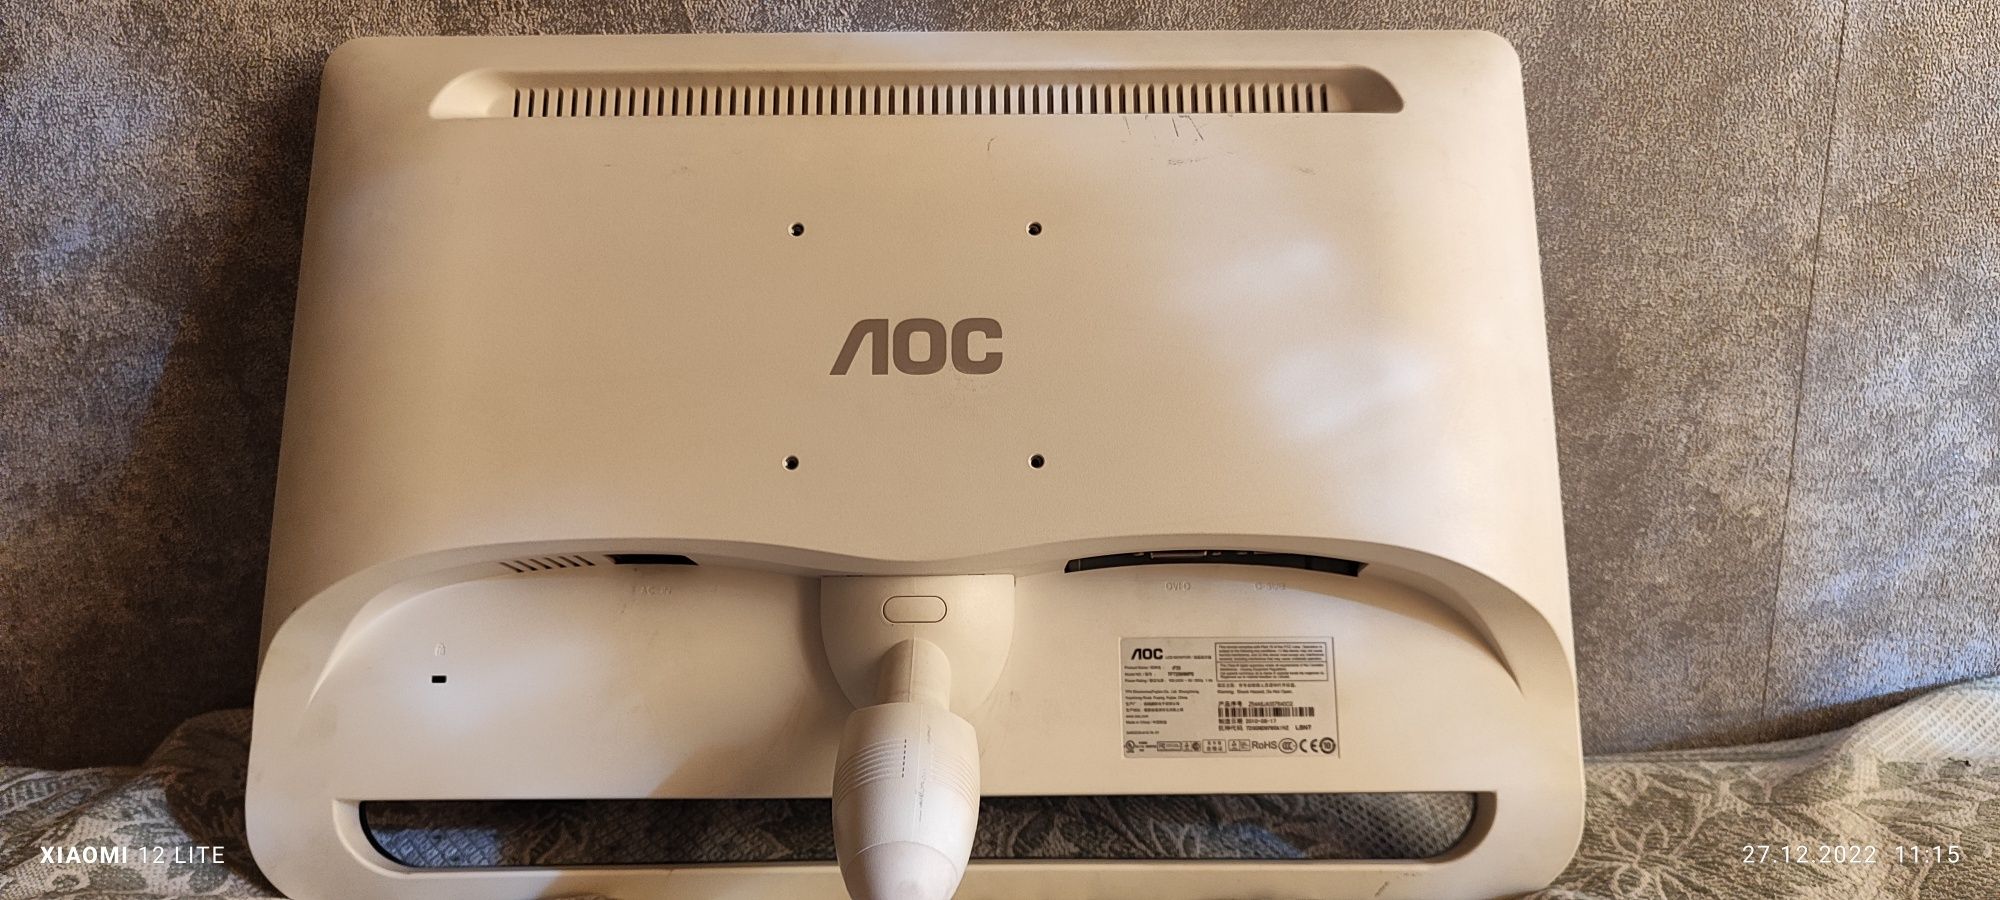 Продам хороший монитор для компьютера AOC 23 диоганаль. Срочно!